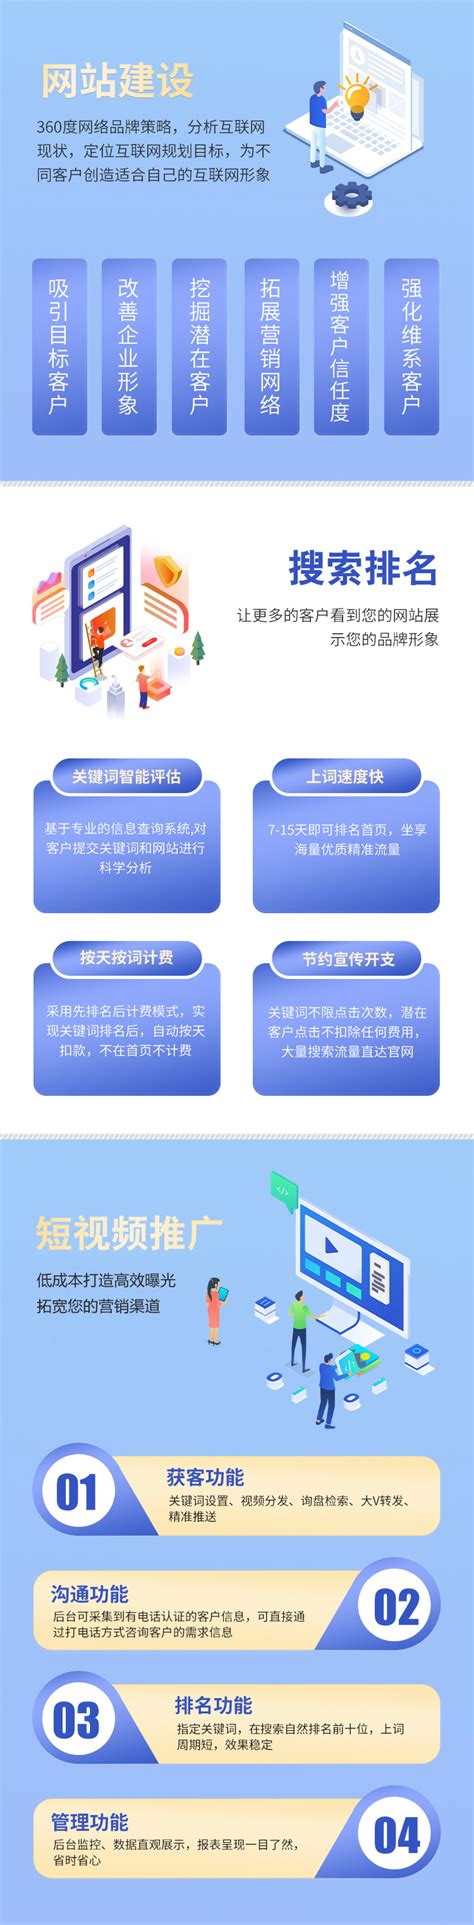 广东网站建设推广咨询平台